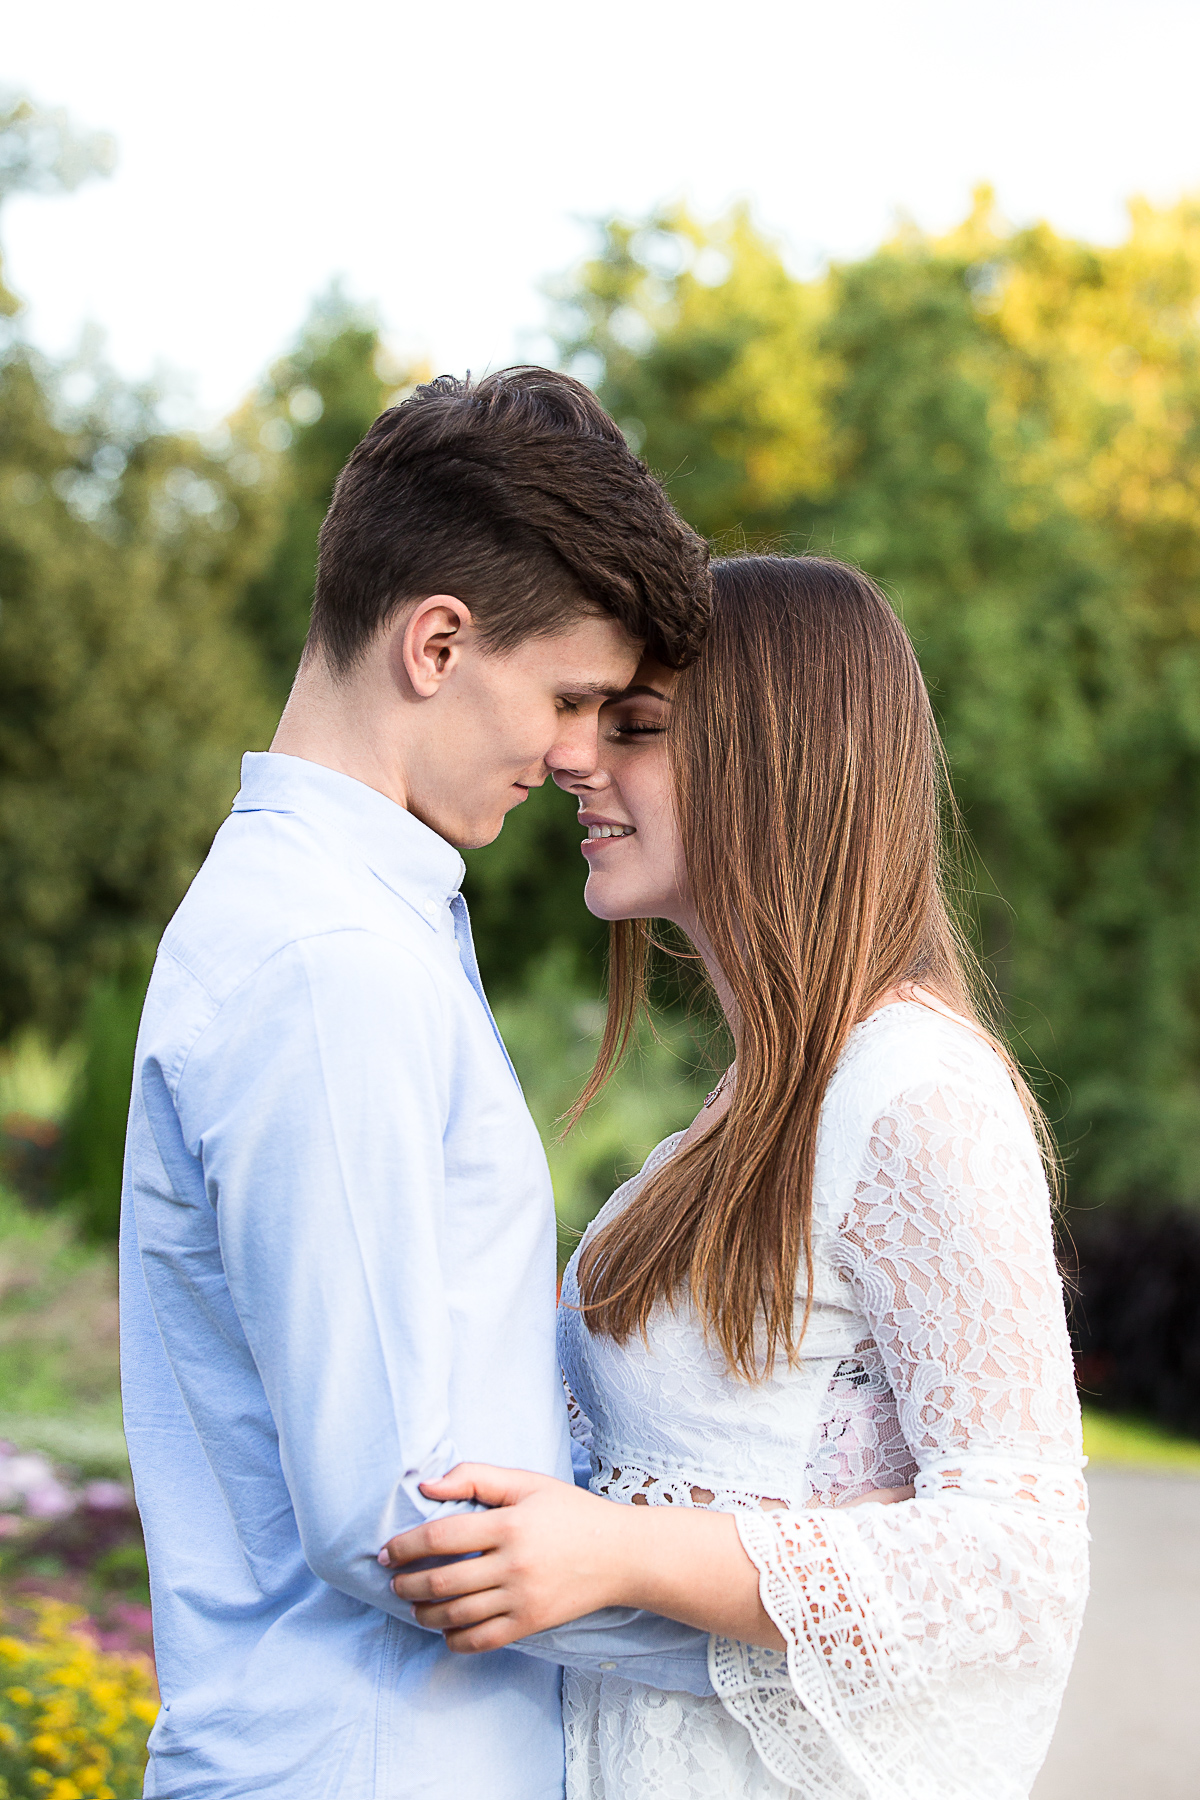 Ein junges Paar kurz vor dem Kuss auf die Lippen